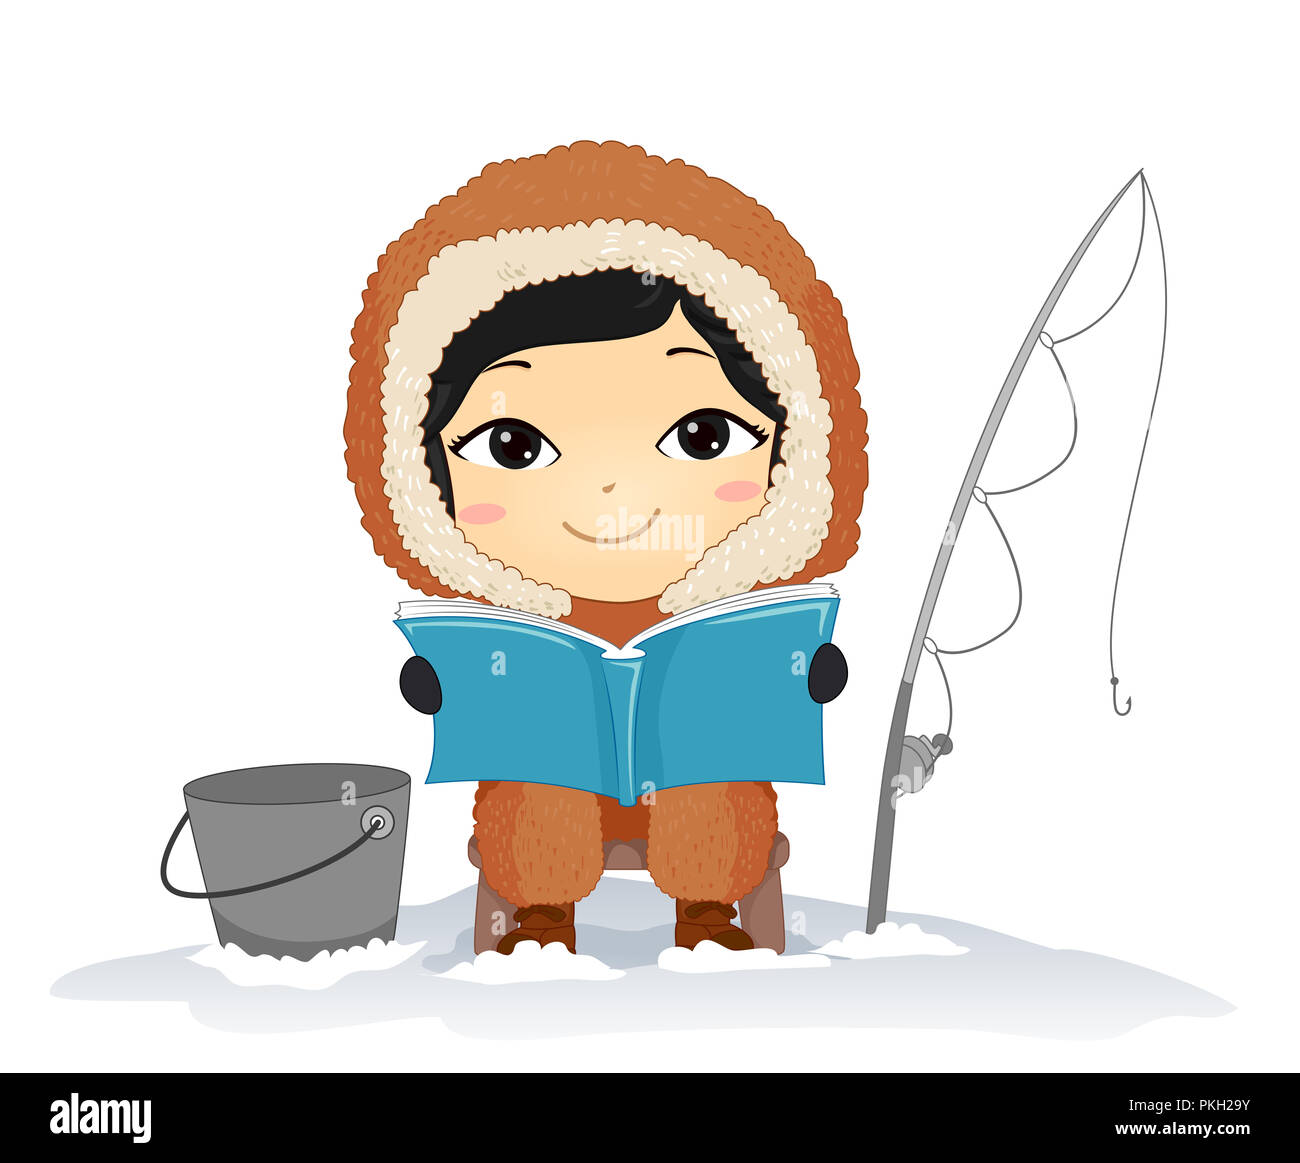 Illustration d'un enfant garçon Eskimo la lecture d'un livre, de la pêche et de l'assise avec un seau et canne à pêche Banque D'Images